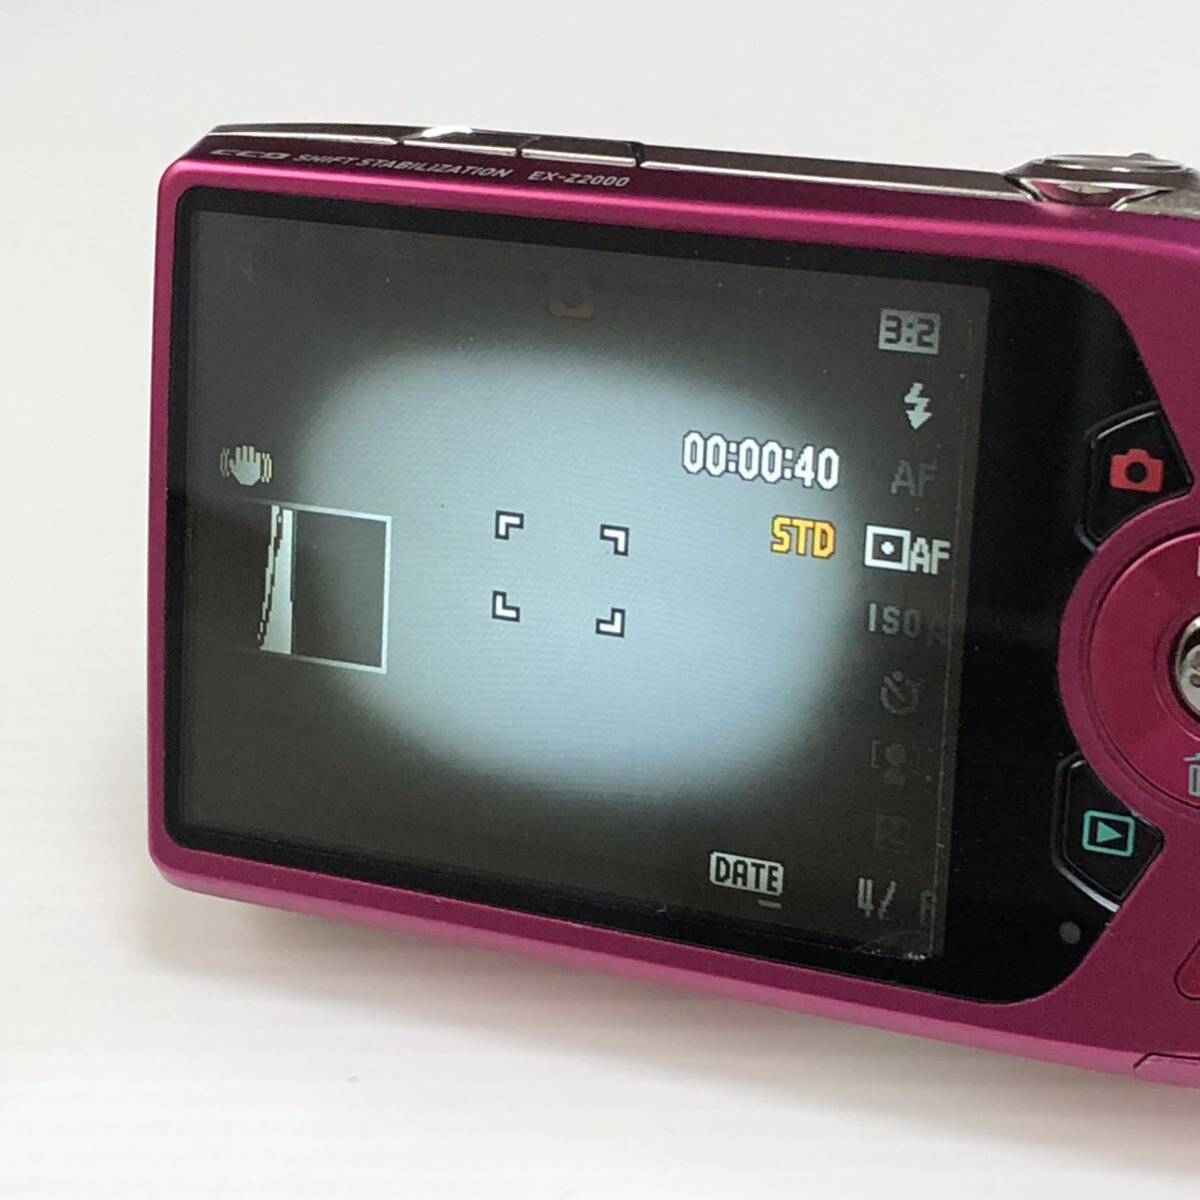  m221-0370-12 【ジャンク】 CASIO カシオ EXILIM デジタルカメラ EX-Z2000 ピンク_画像5